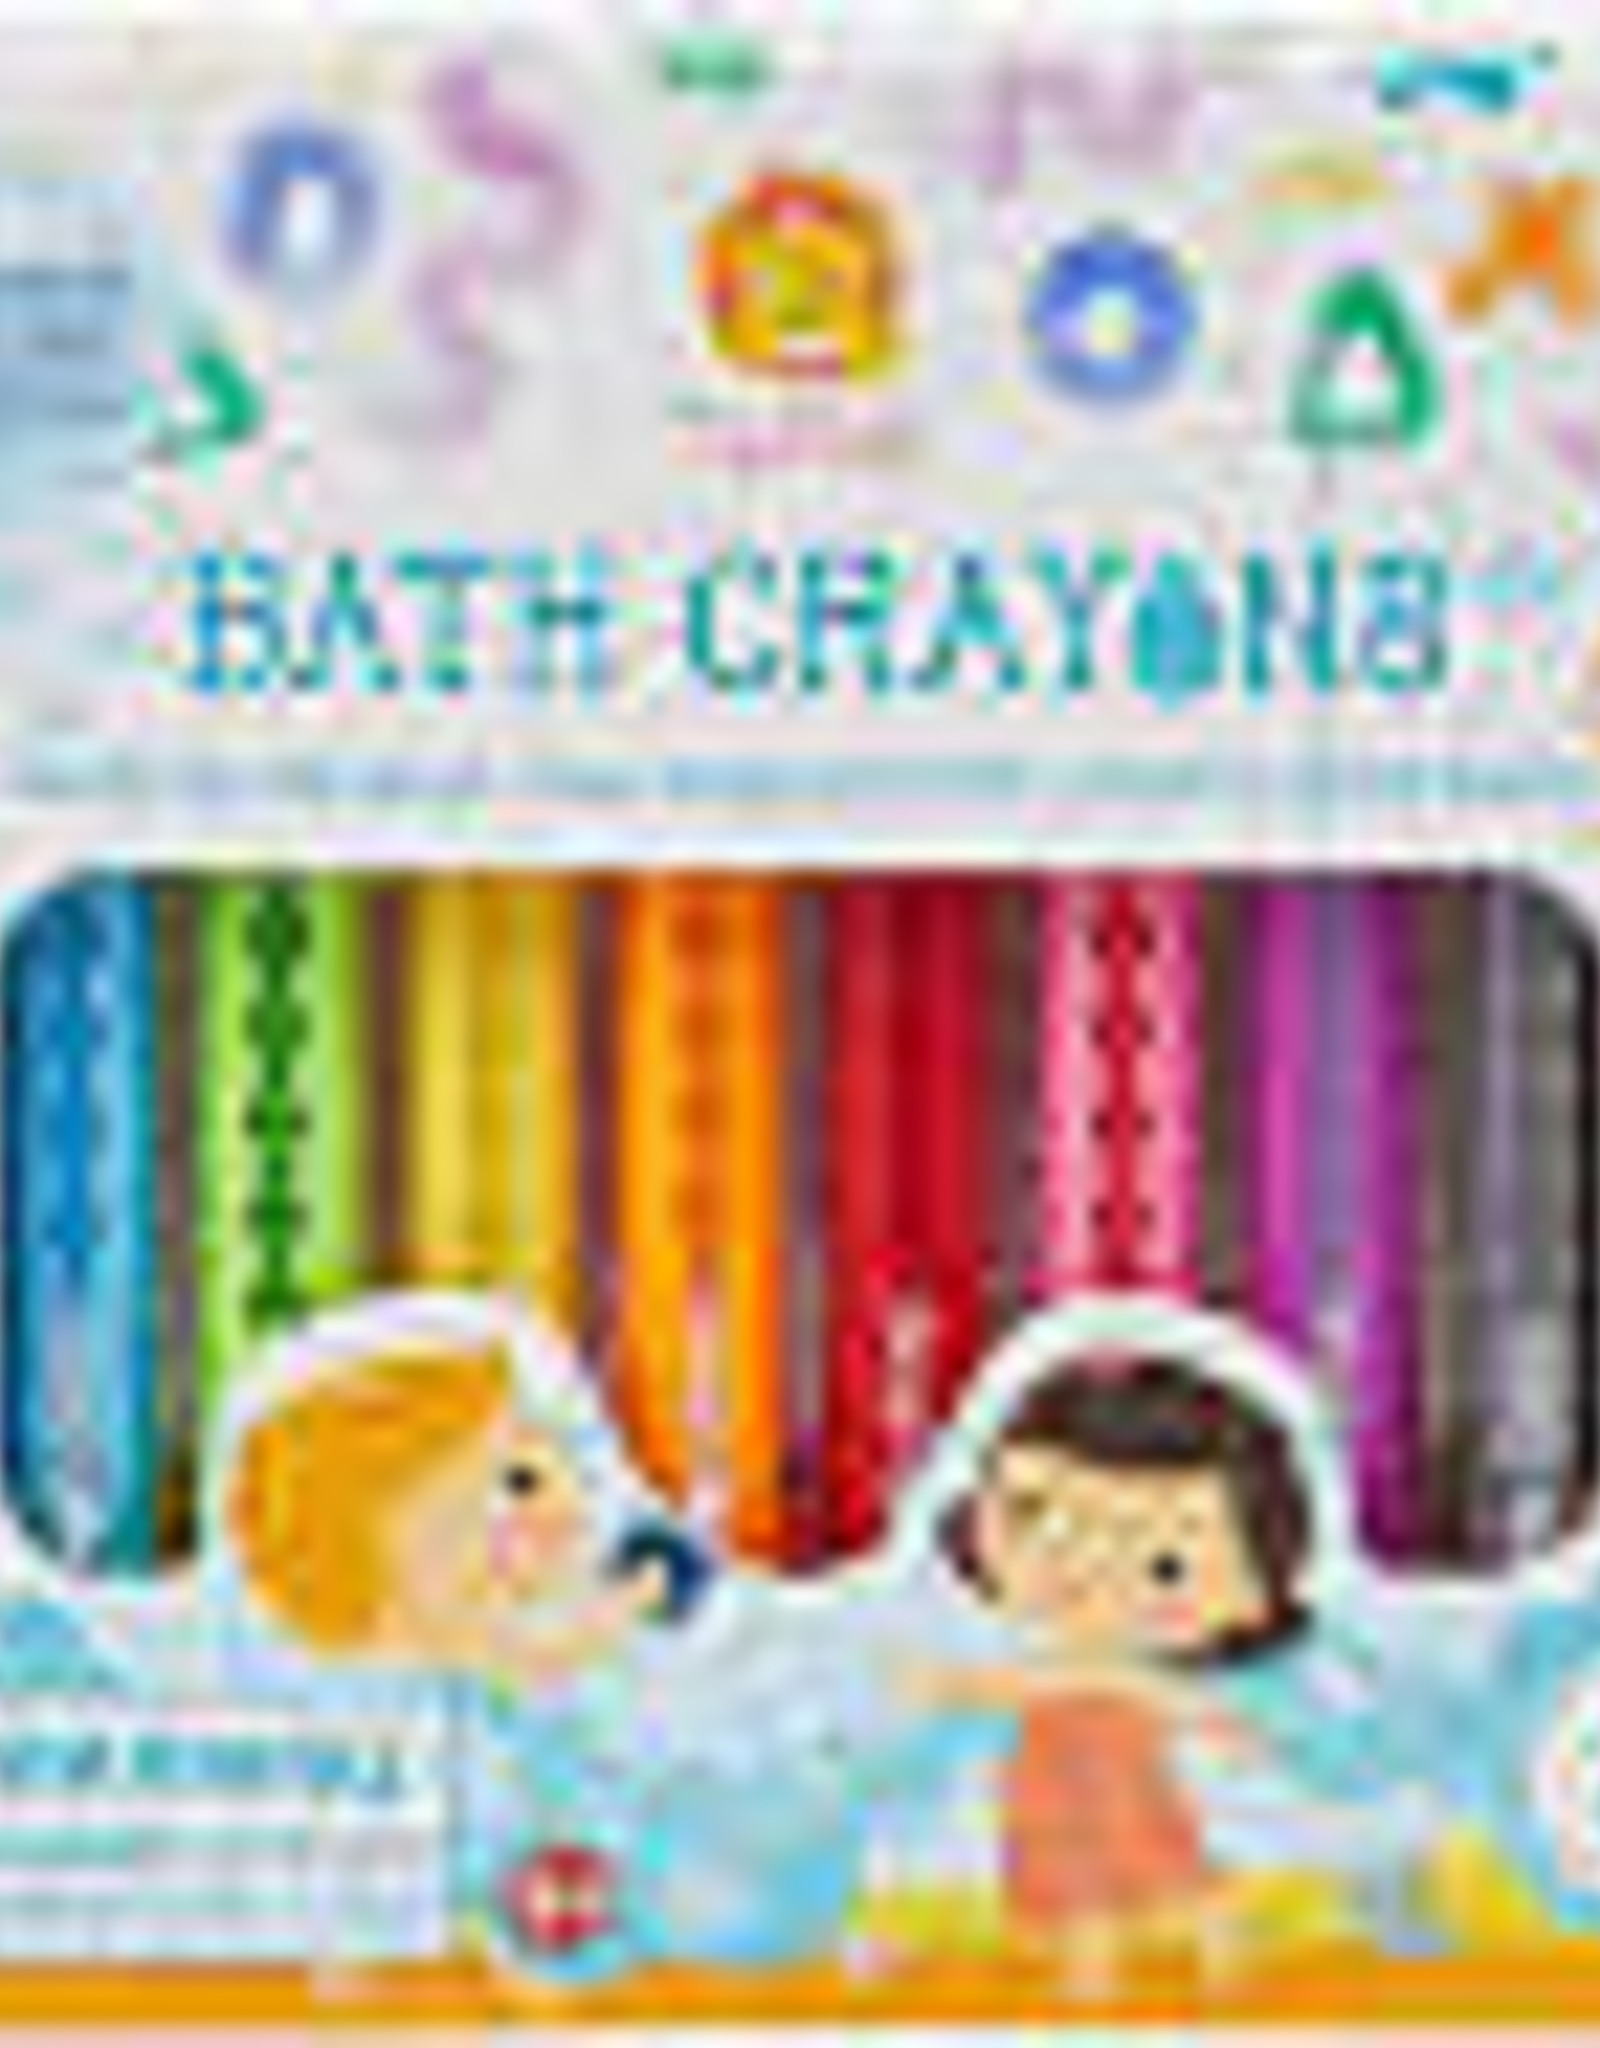 Schylling Bath Crayons